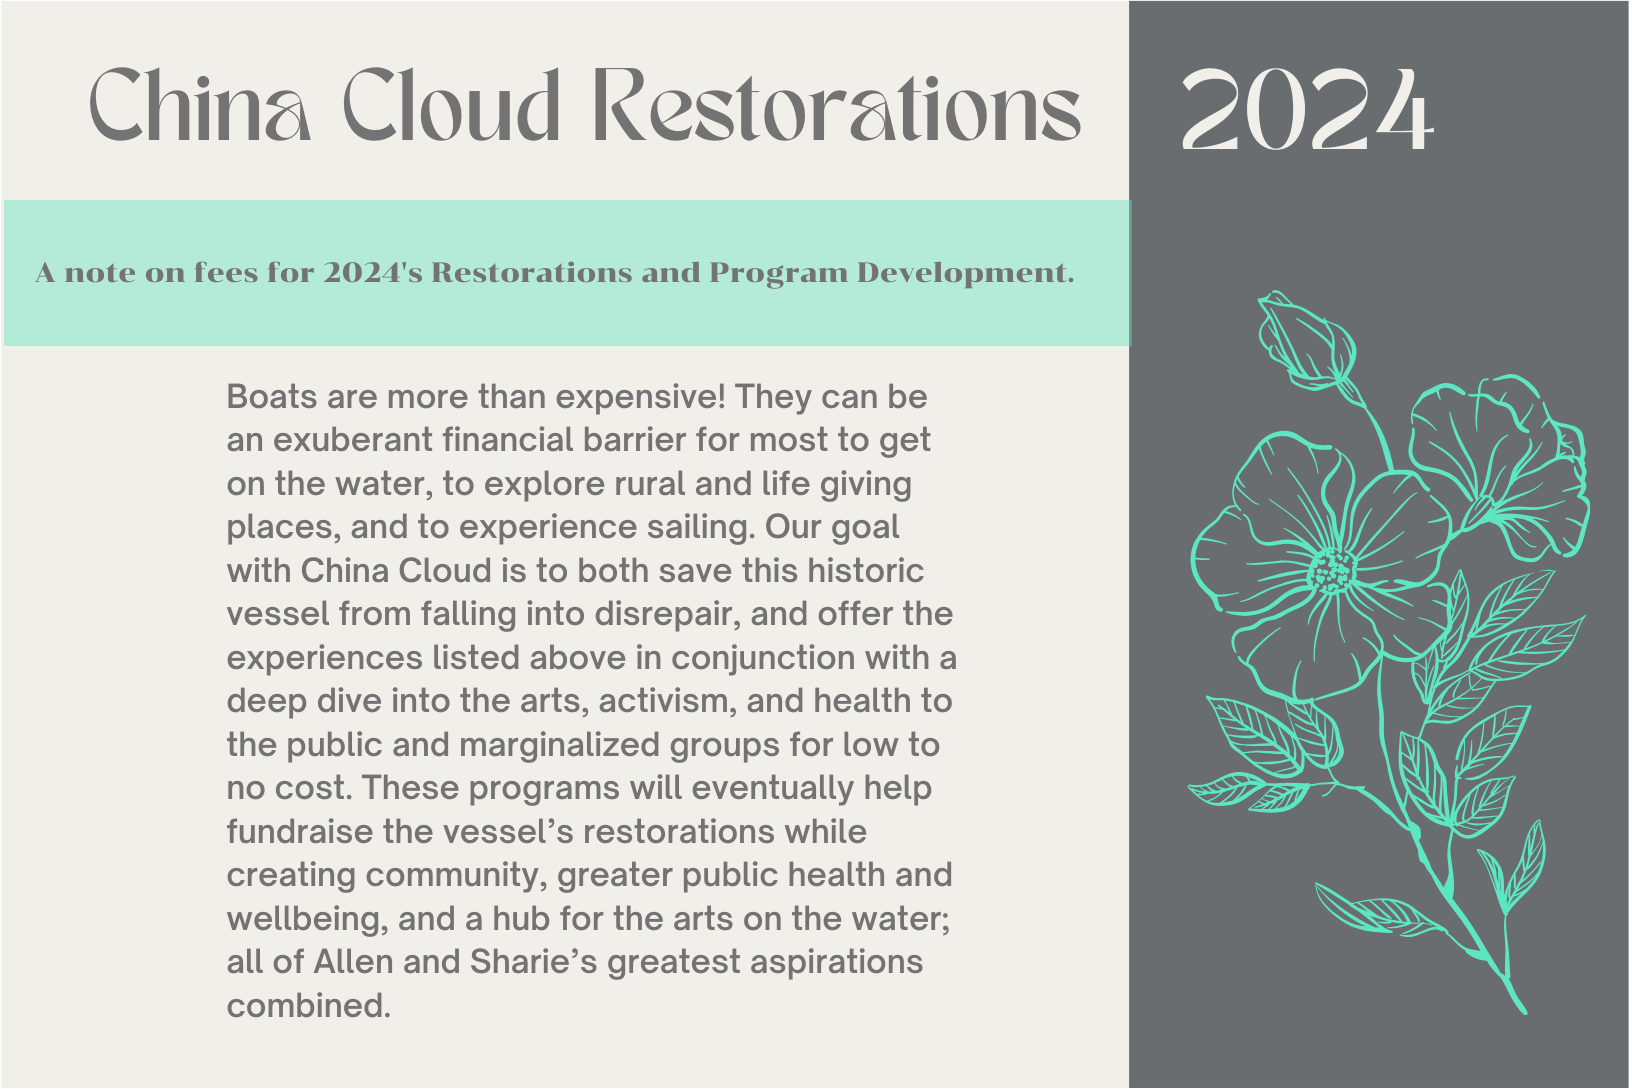 China Cloud Restorations 2024-3 copy 4.png